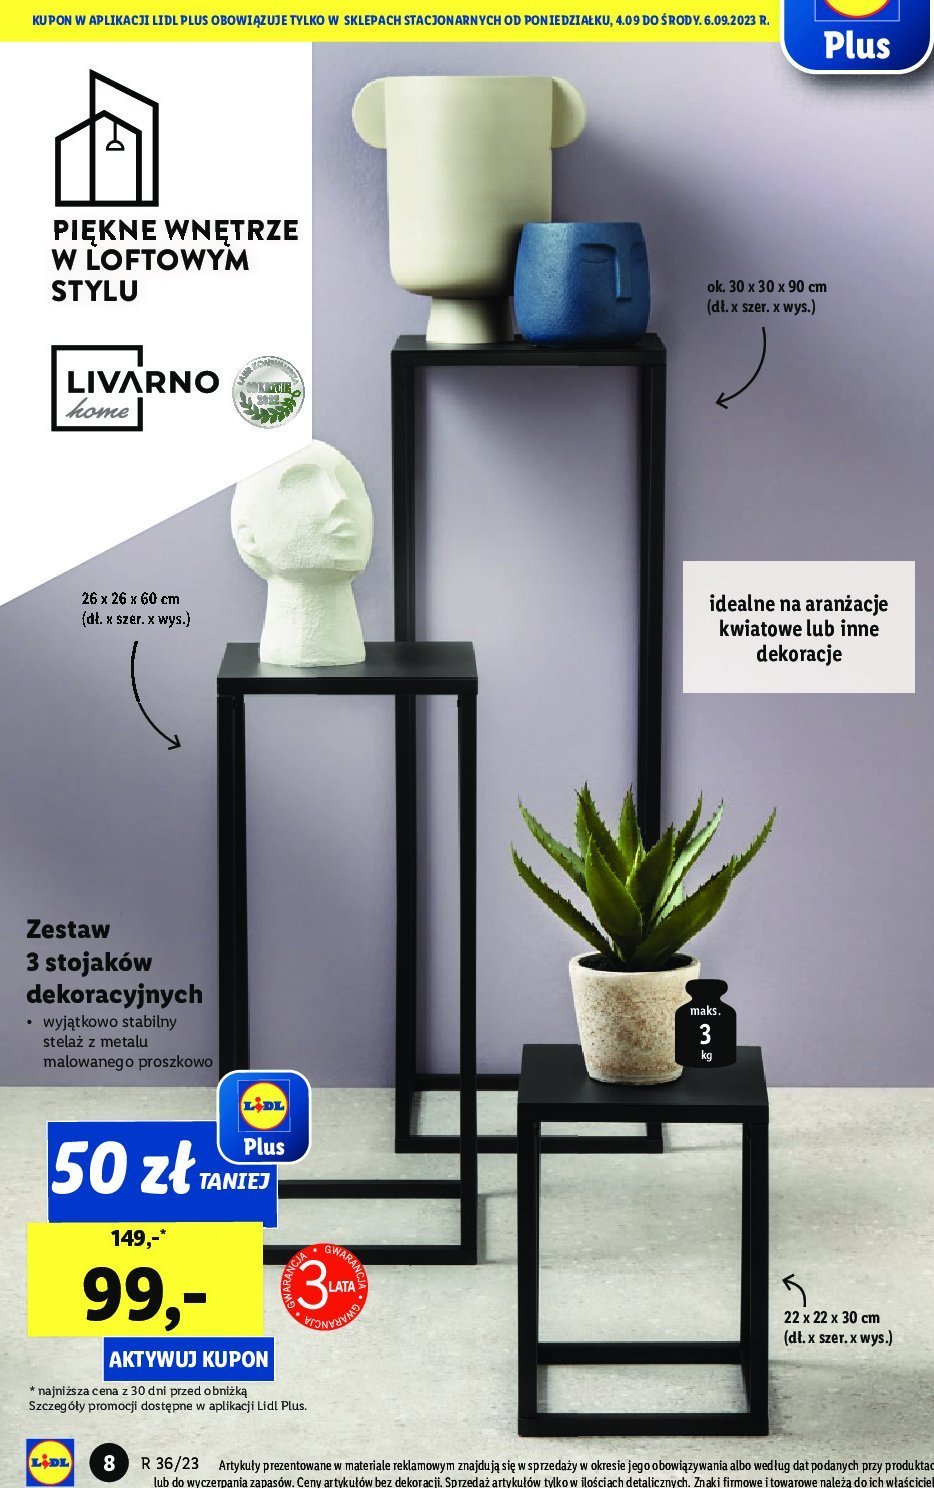 LIVARNO stojaków ofert - cena - dekoracyjnych - Zestaw sklep - Brak Blix.pl - | HOME opinie promocje